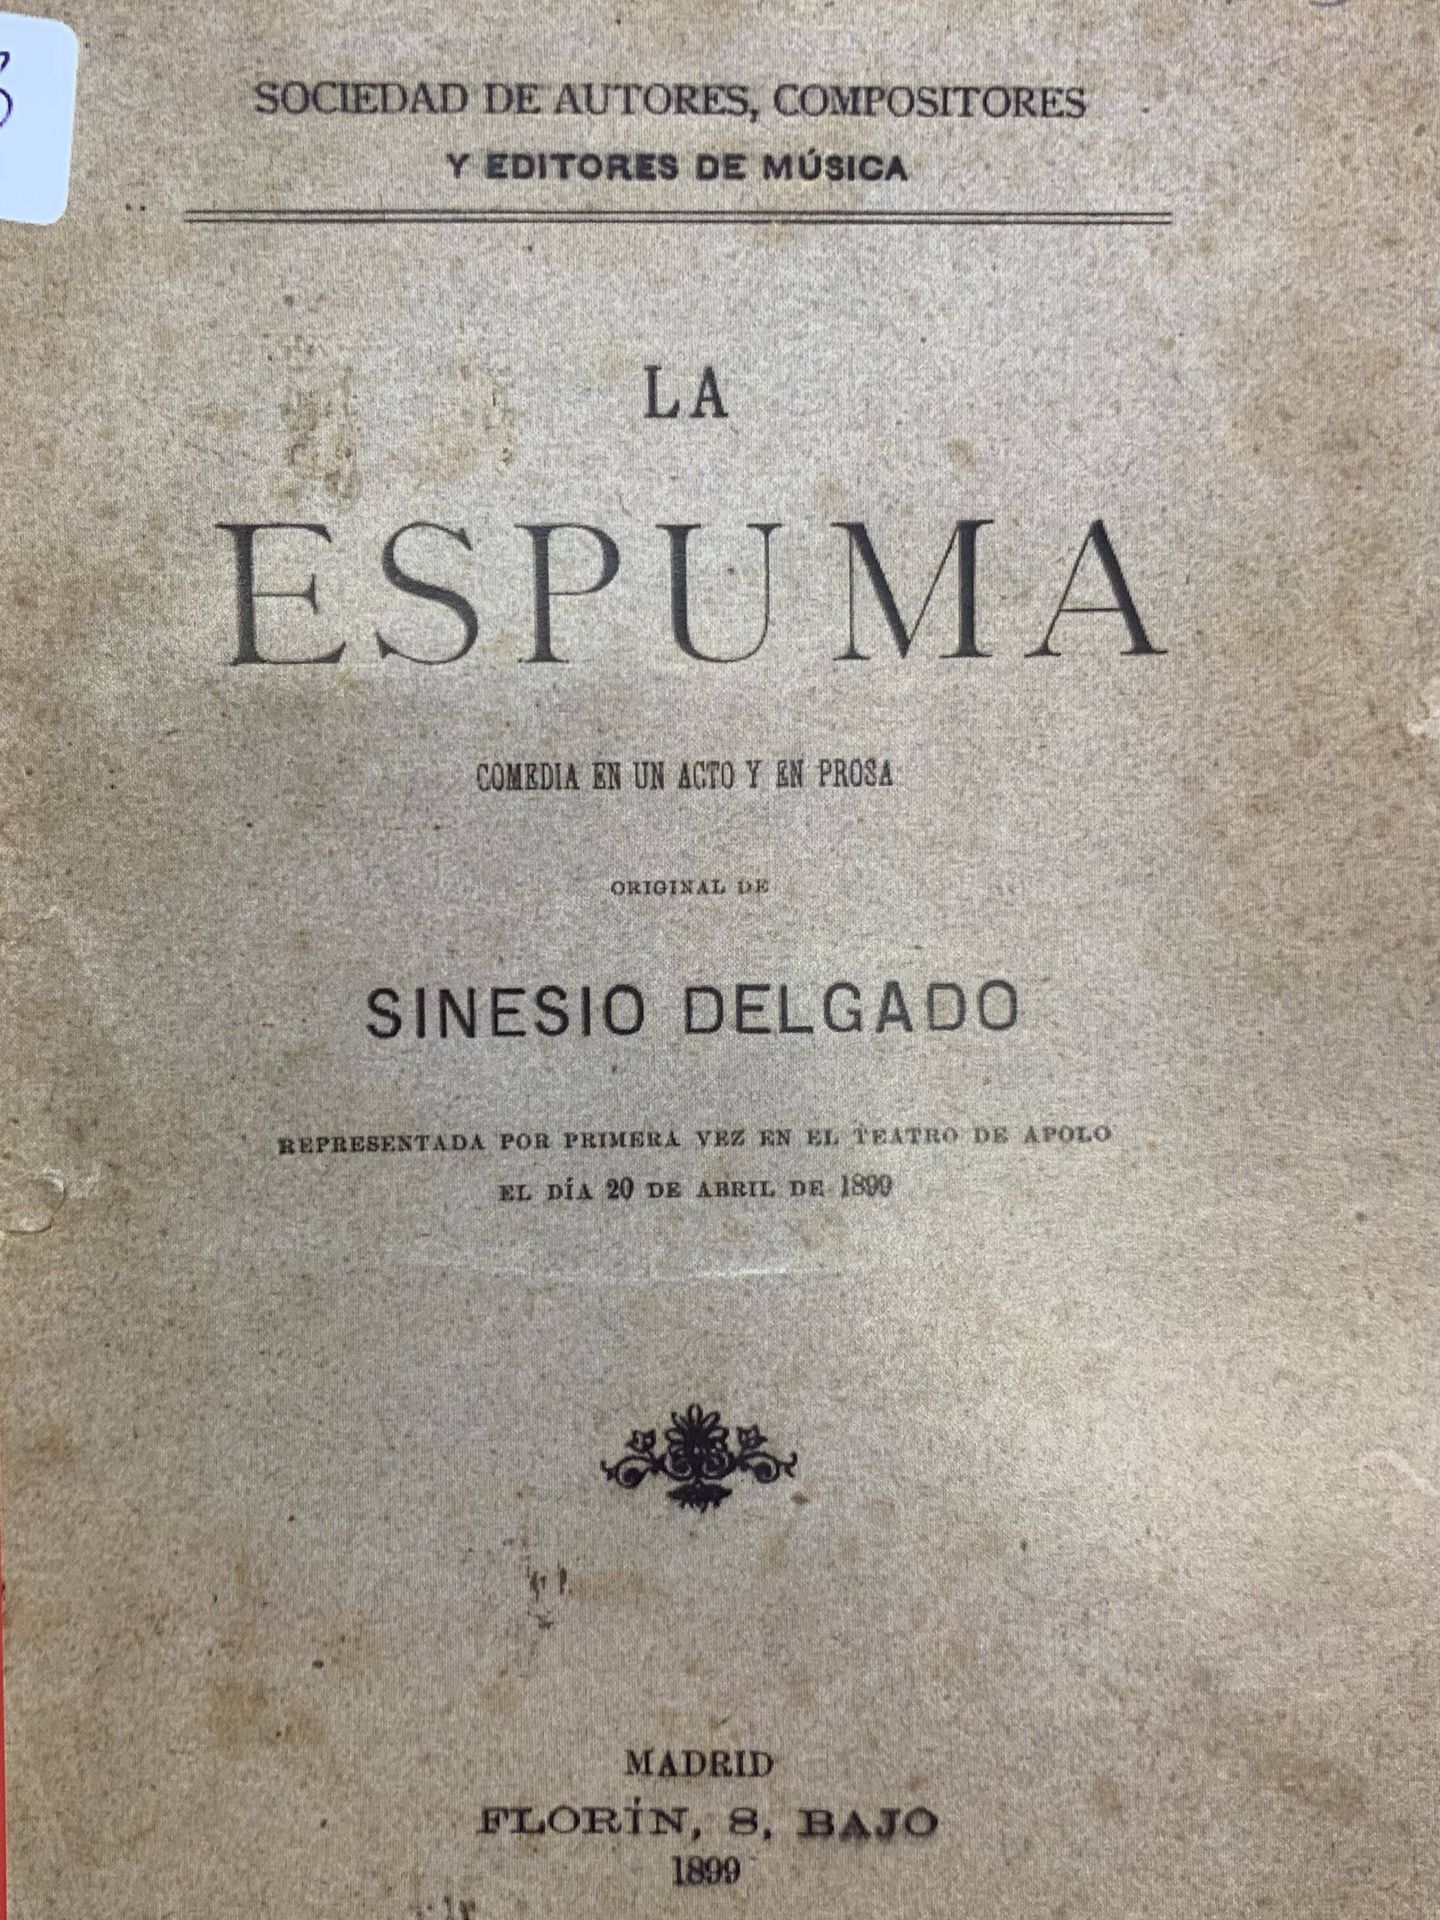 Portada de 'La espuma', de Sinesio Delgado, primera obra registrada en la Sociedad de Autores de España. ARCHIVO SGAE